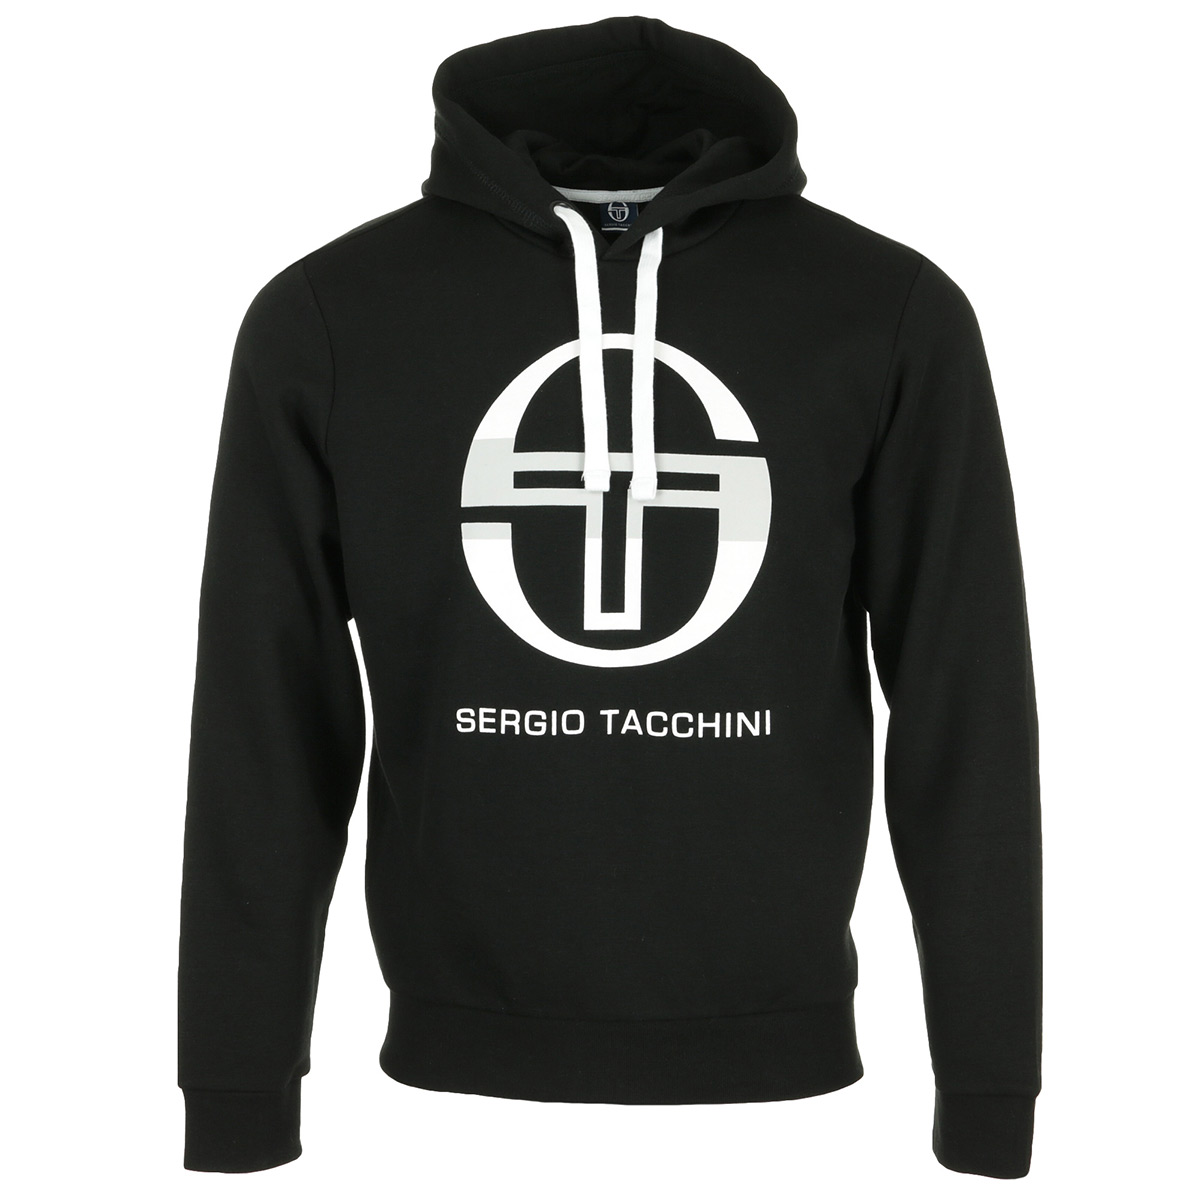 Sergio Tacchini Zion Sweater